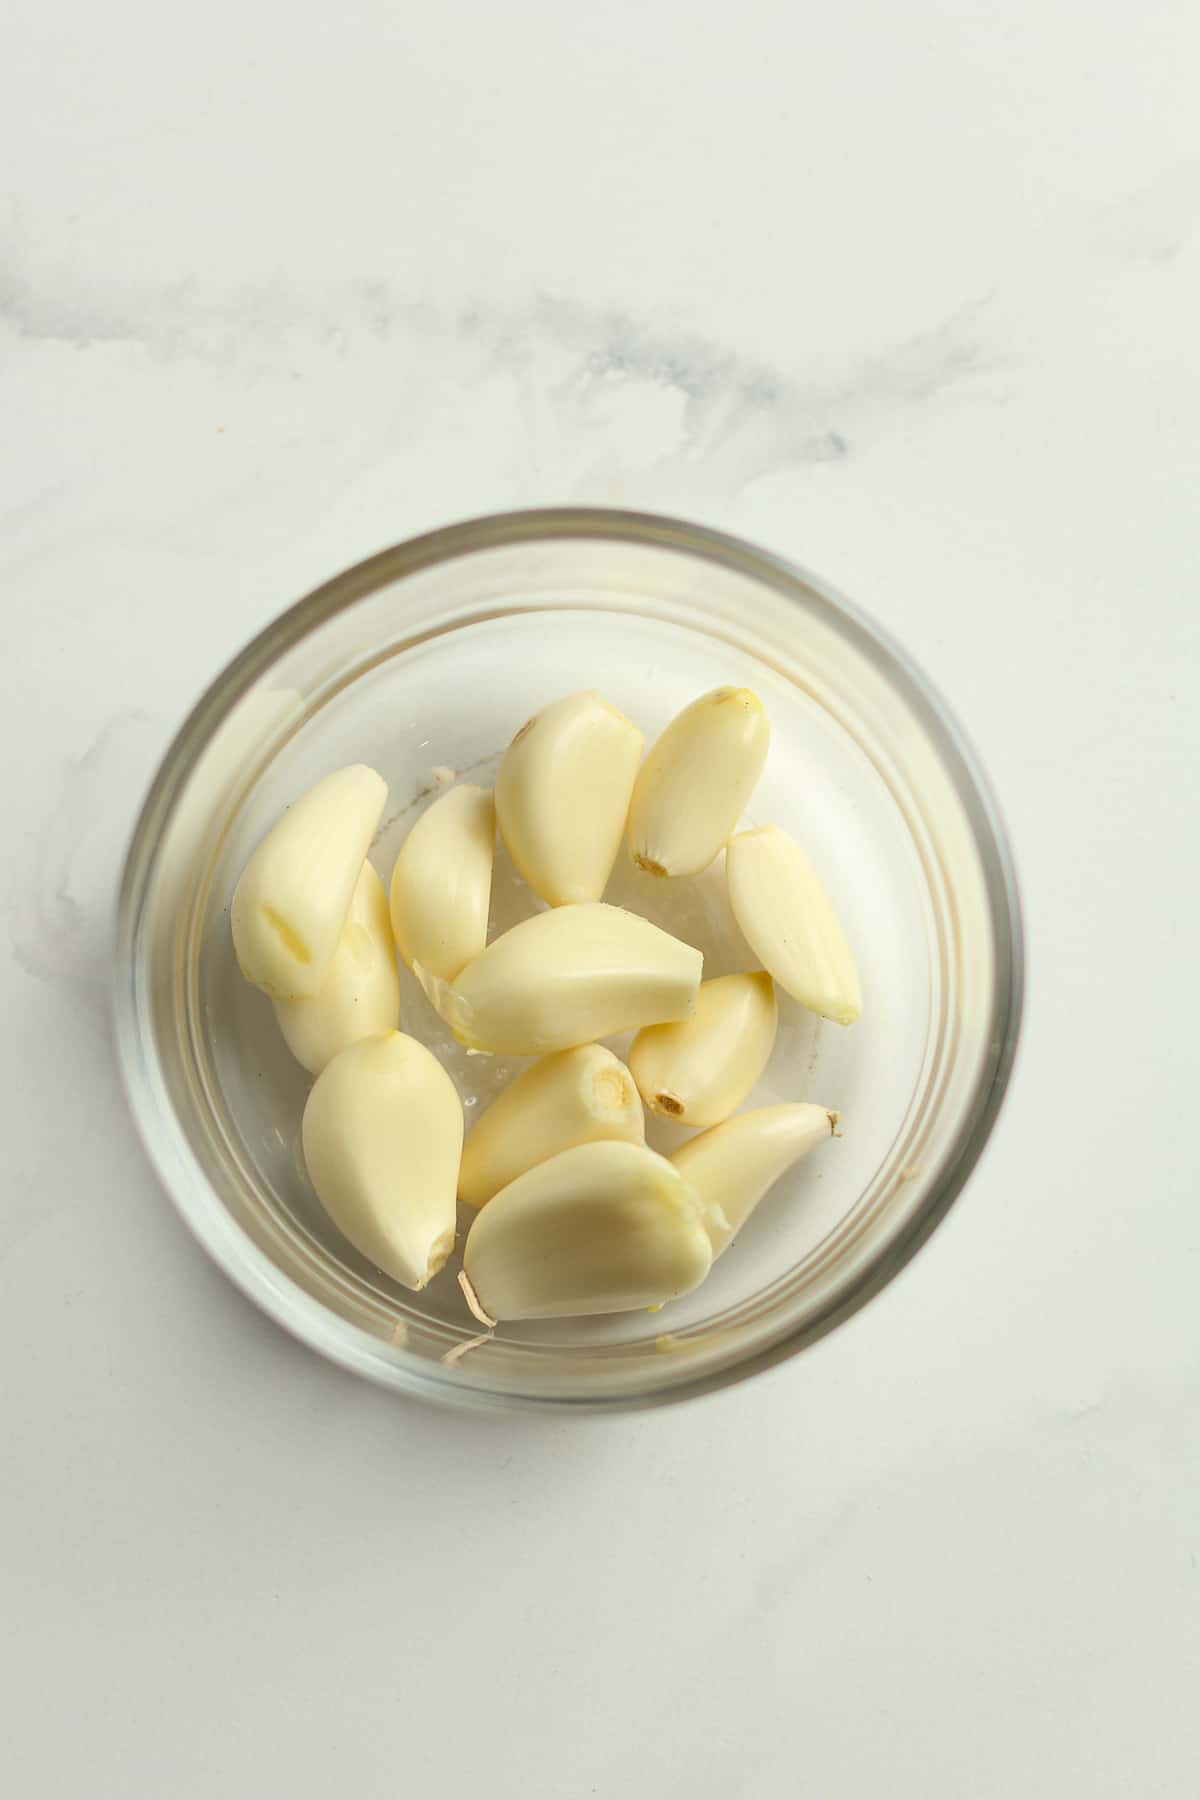 A bowl of peeled garlic.